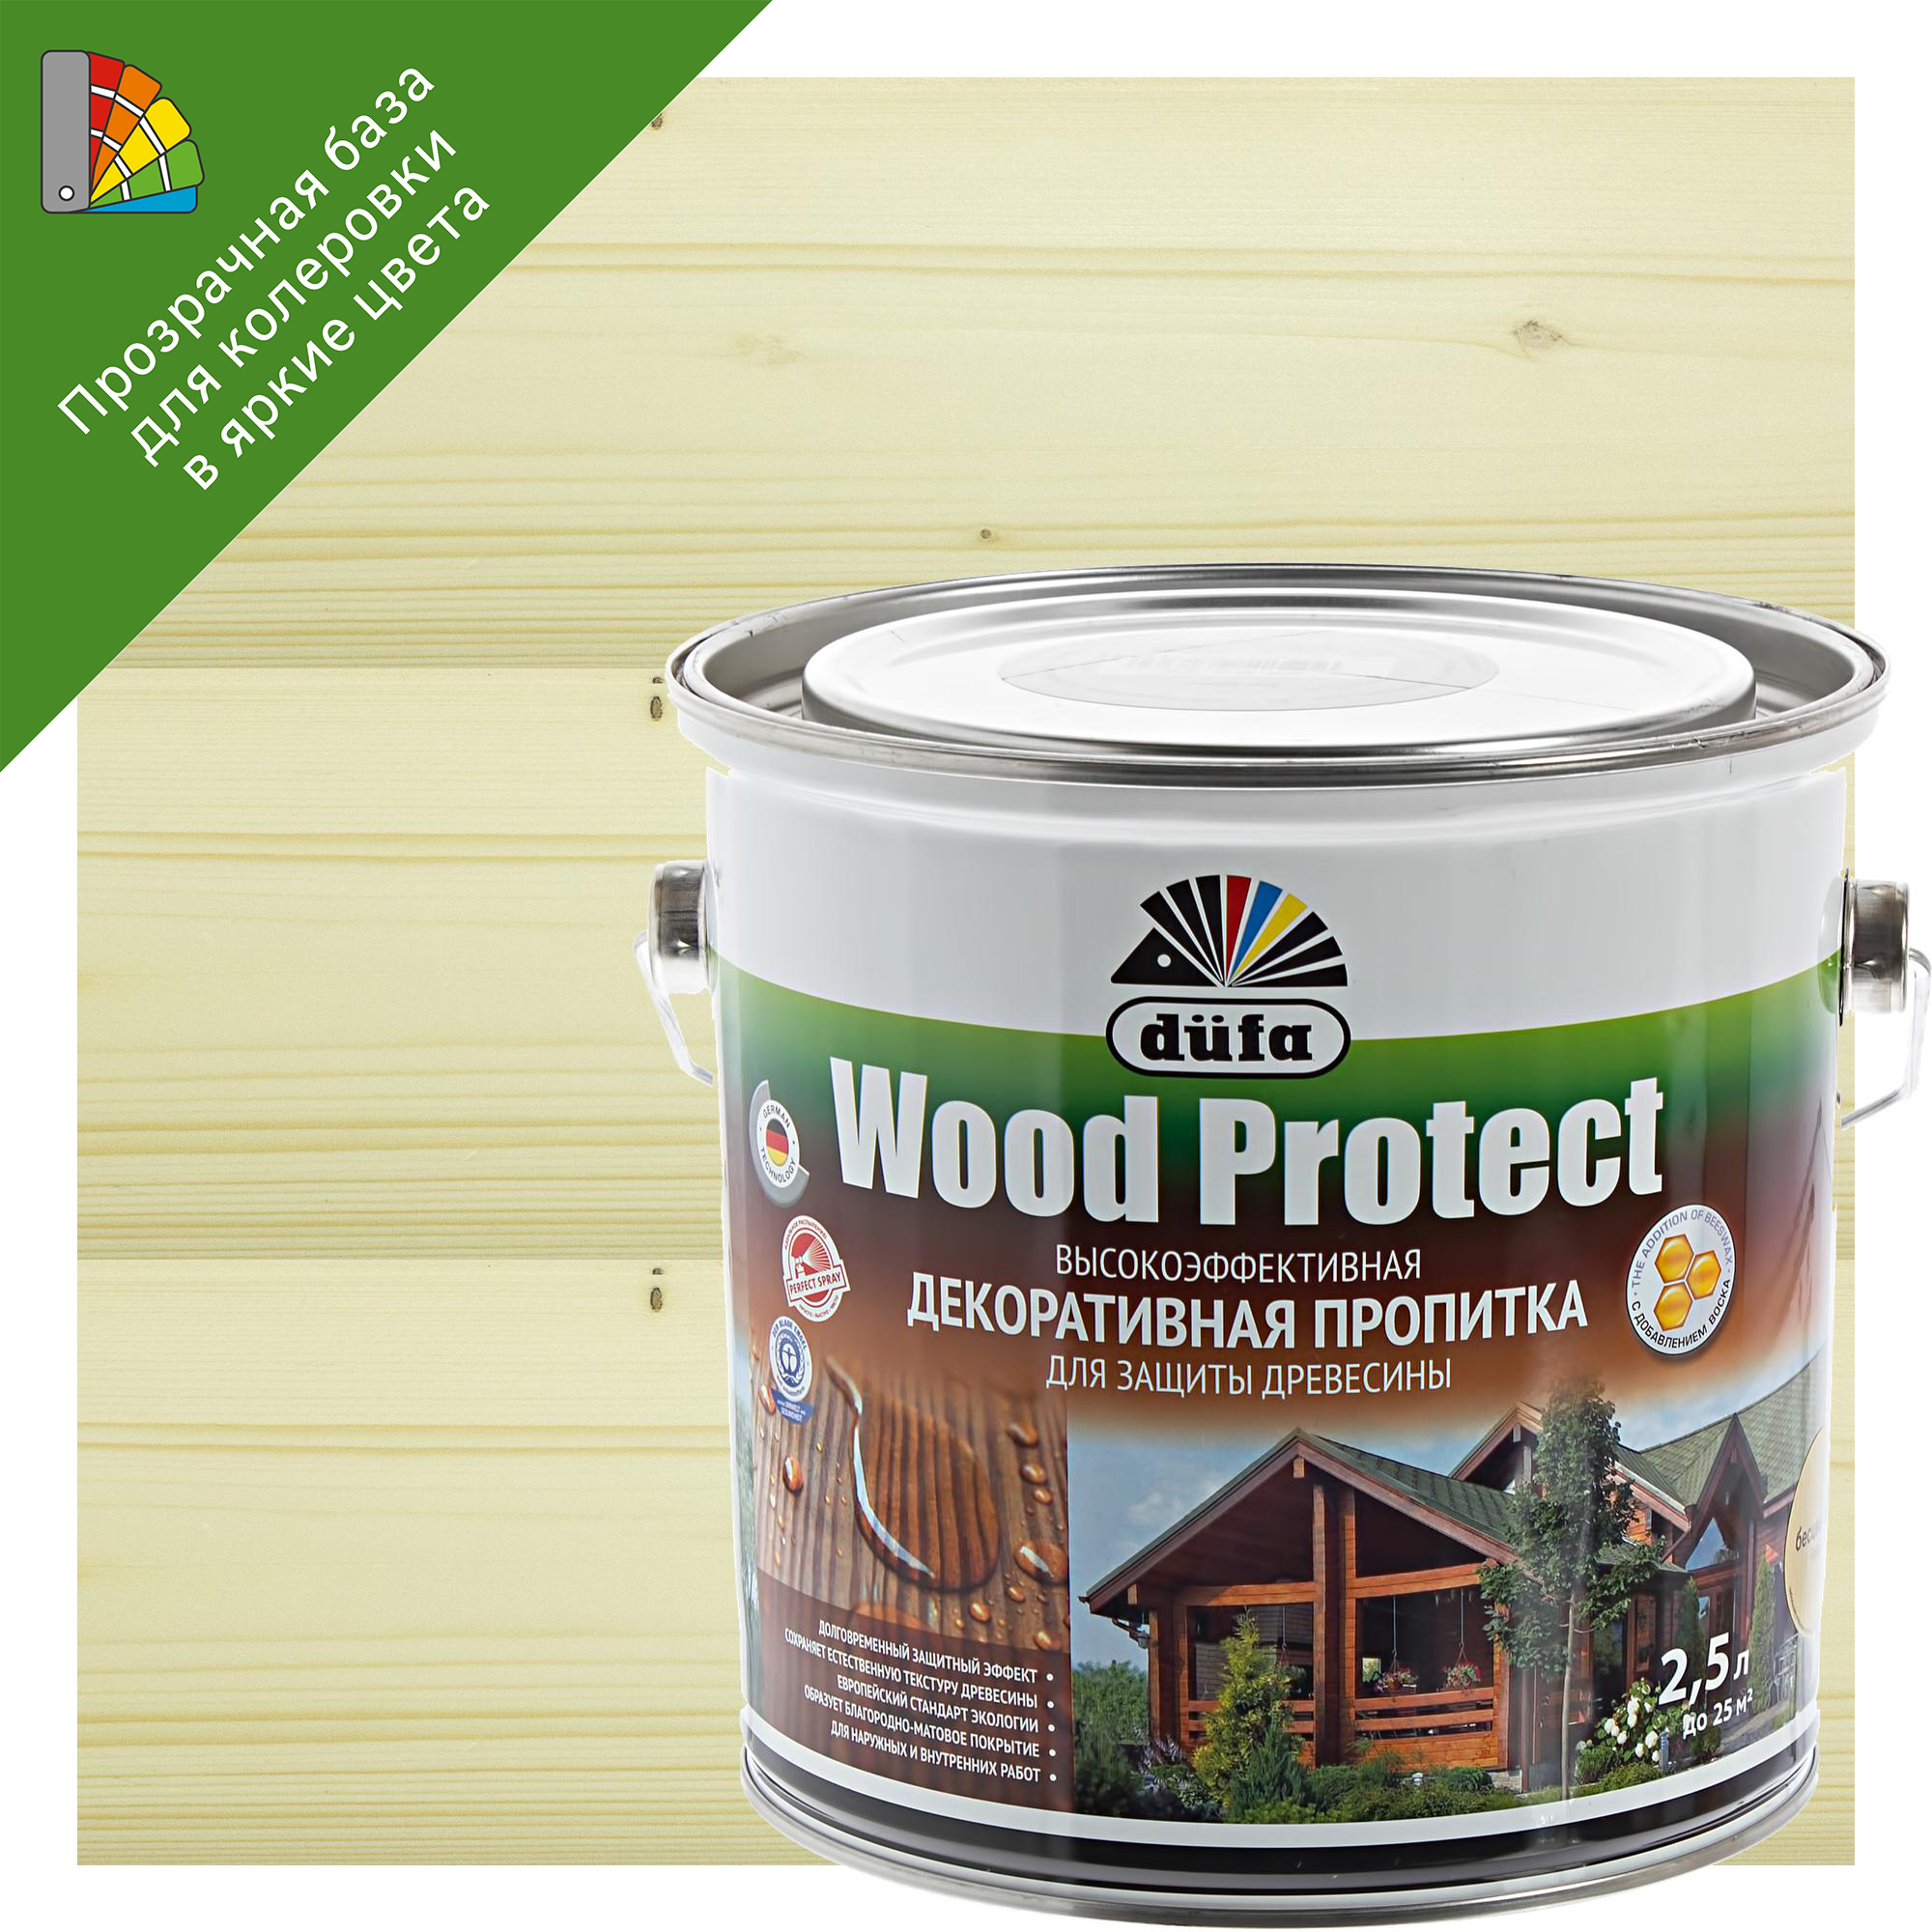 14724333 Антисептик Wood Protect прозрачный 2.5 л STLM-0005066 DUFA